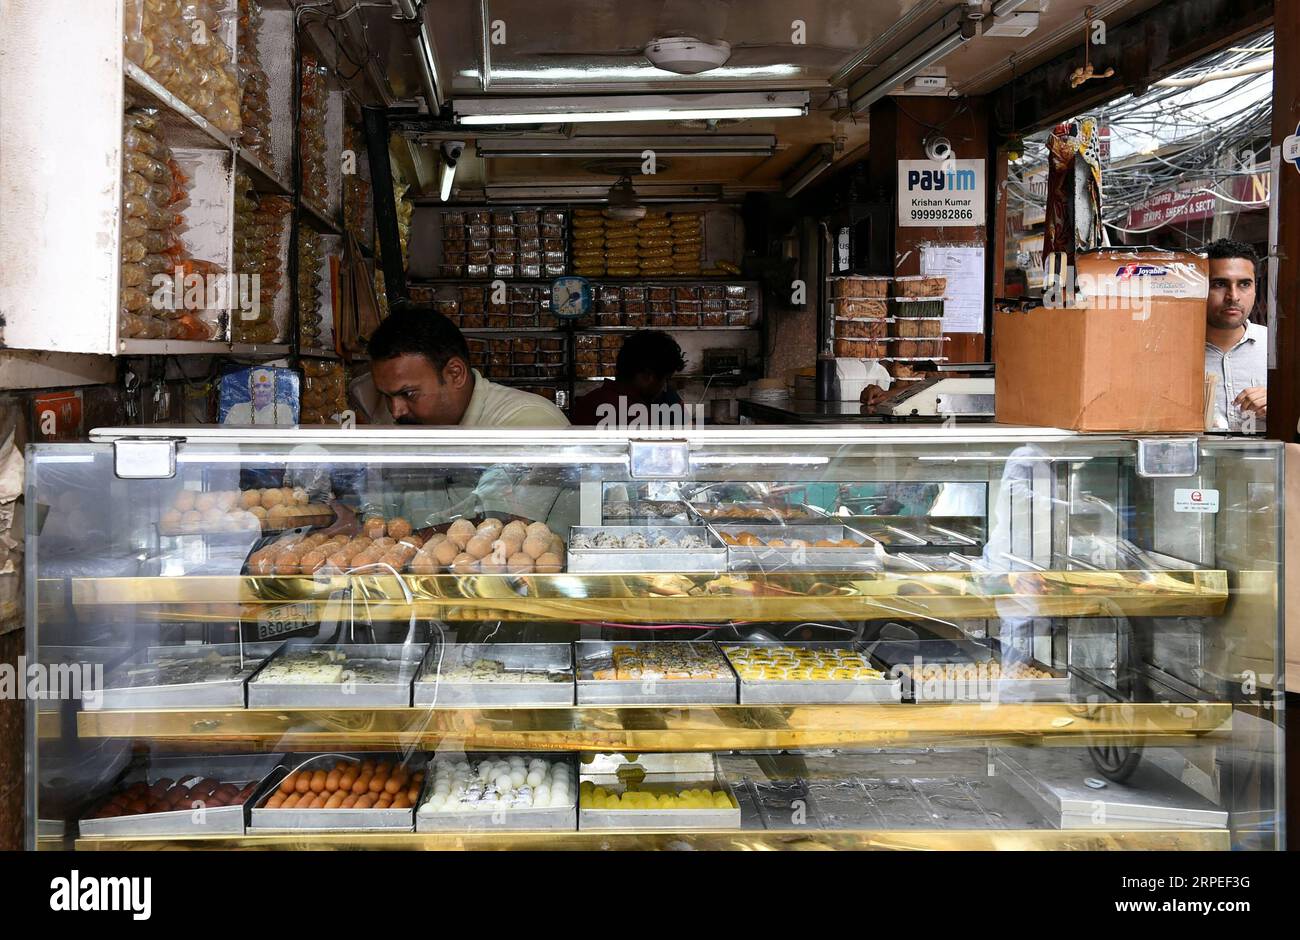 (190827) -- NEW DELHI, 27 août 2019 -- Un vendeur vend des ladoos dans un magasin de desserts traditionnels à New Delhi, Inde, le 27 août 2019. Ladoo est un bonbon indien généralement fait de farine, de sucre, d'huile végétale, d'épices et de noix. Il y a beaucoup de magasins de desserts vendant des ladoos à travers New Delhi. Les Ladoos sont aimés par les habitants, soit comme collation de thé pour les pauses de l'après-midi, soit comme plat lors de banquets festifs.) INDE-NOUVEAU DELHI-DESSERT-LADOO ZhangxNaijie PUBLICATIONxNOTxINxCHN Banque D'Images